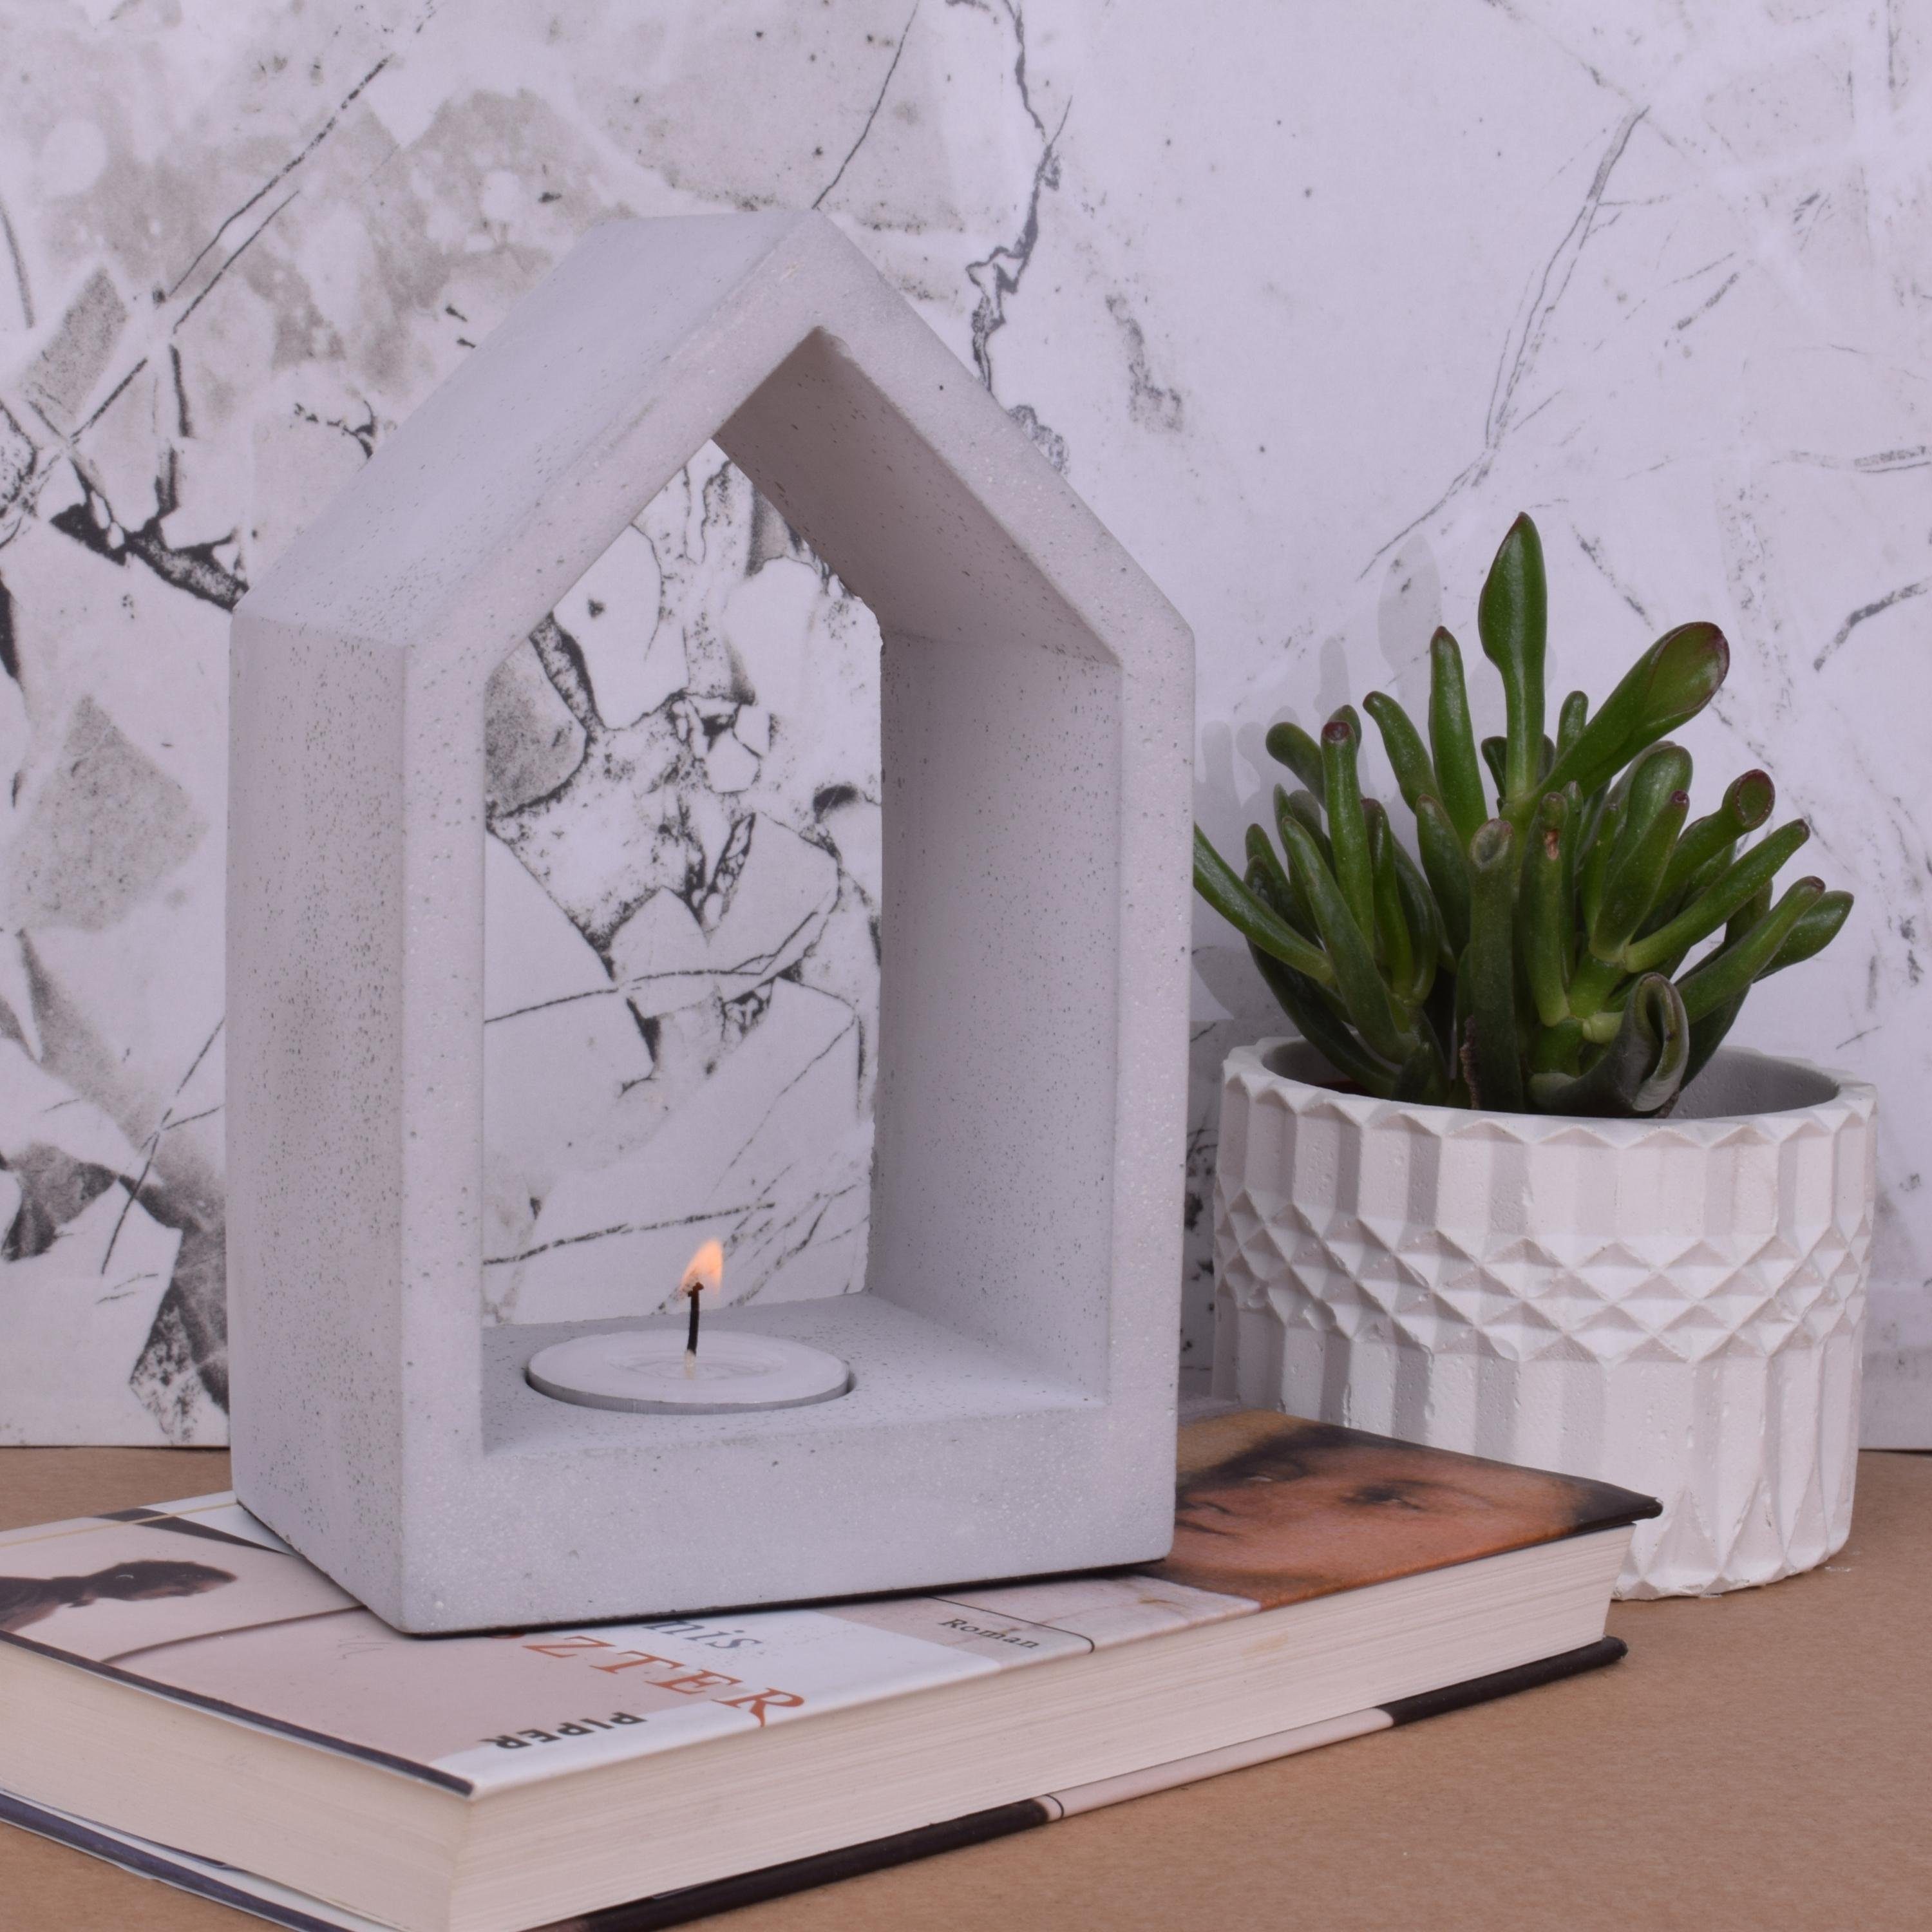 TIVENDIS Dekoschale "Zuhause" grau Teelicht Beton-Design Kerzenhalter